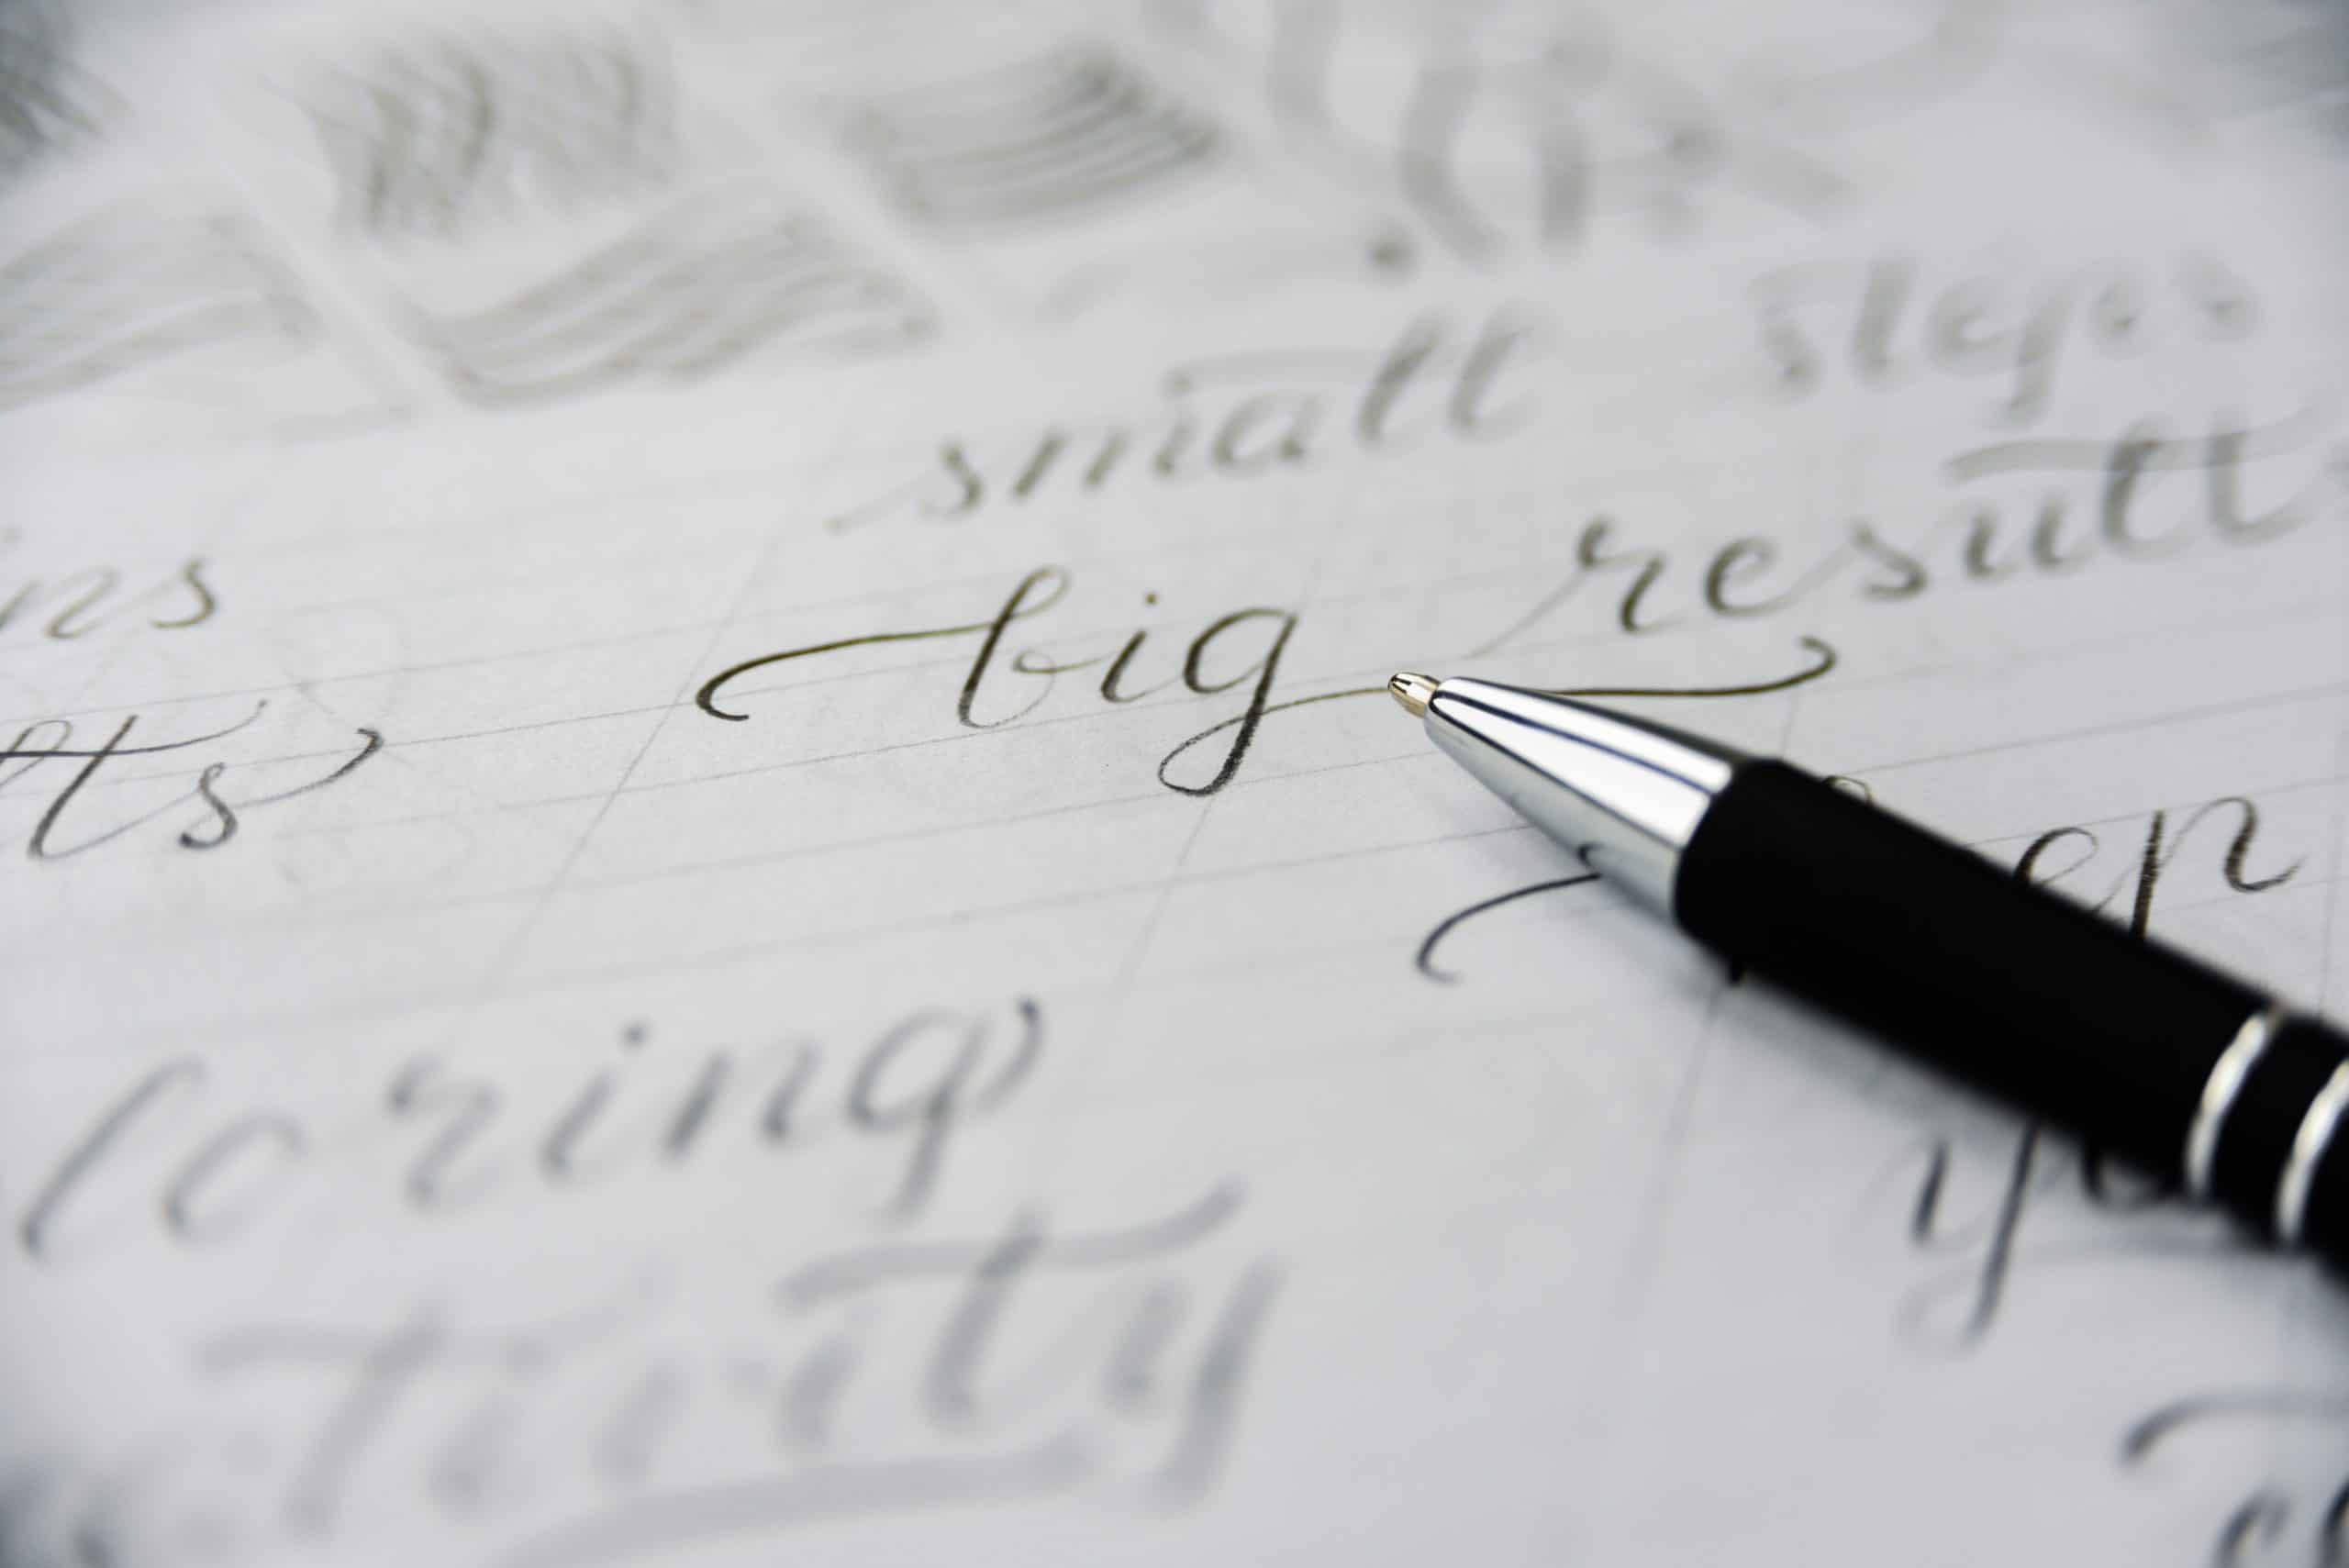 perito-caligrafico-peritaje-caligrafia-escritura